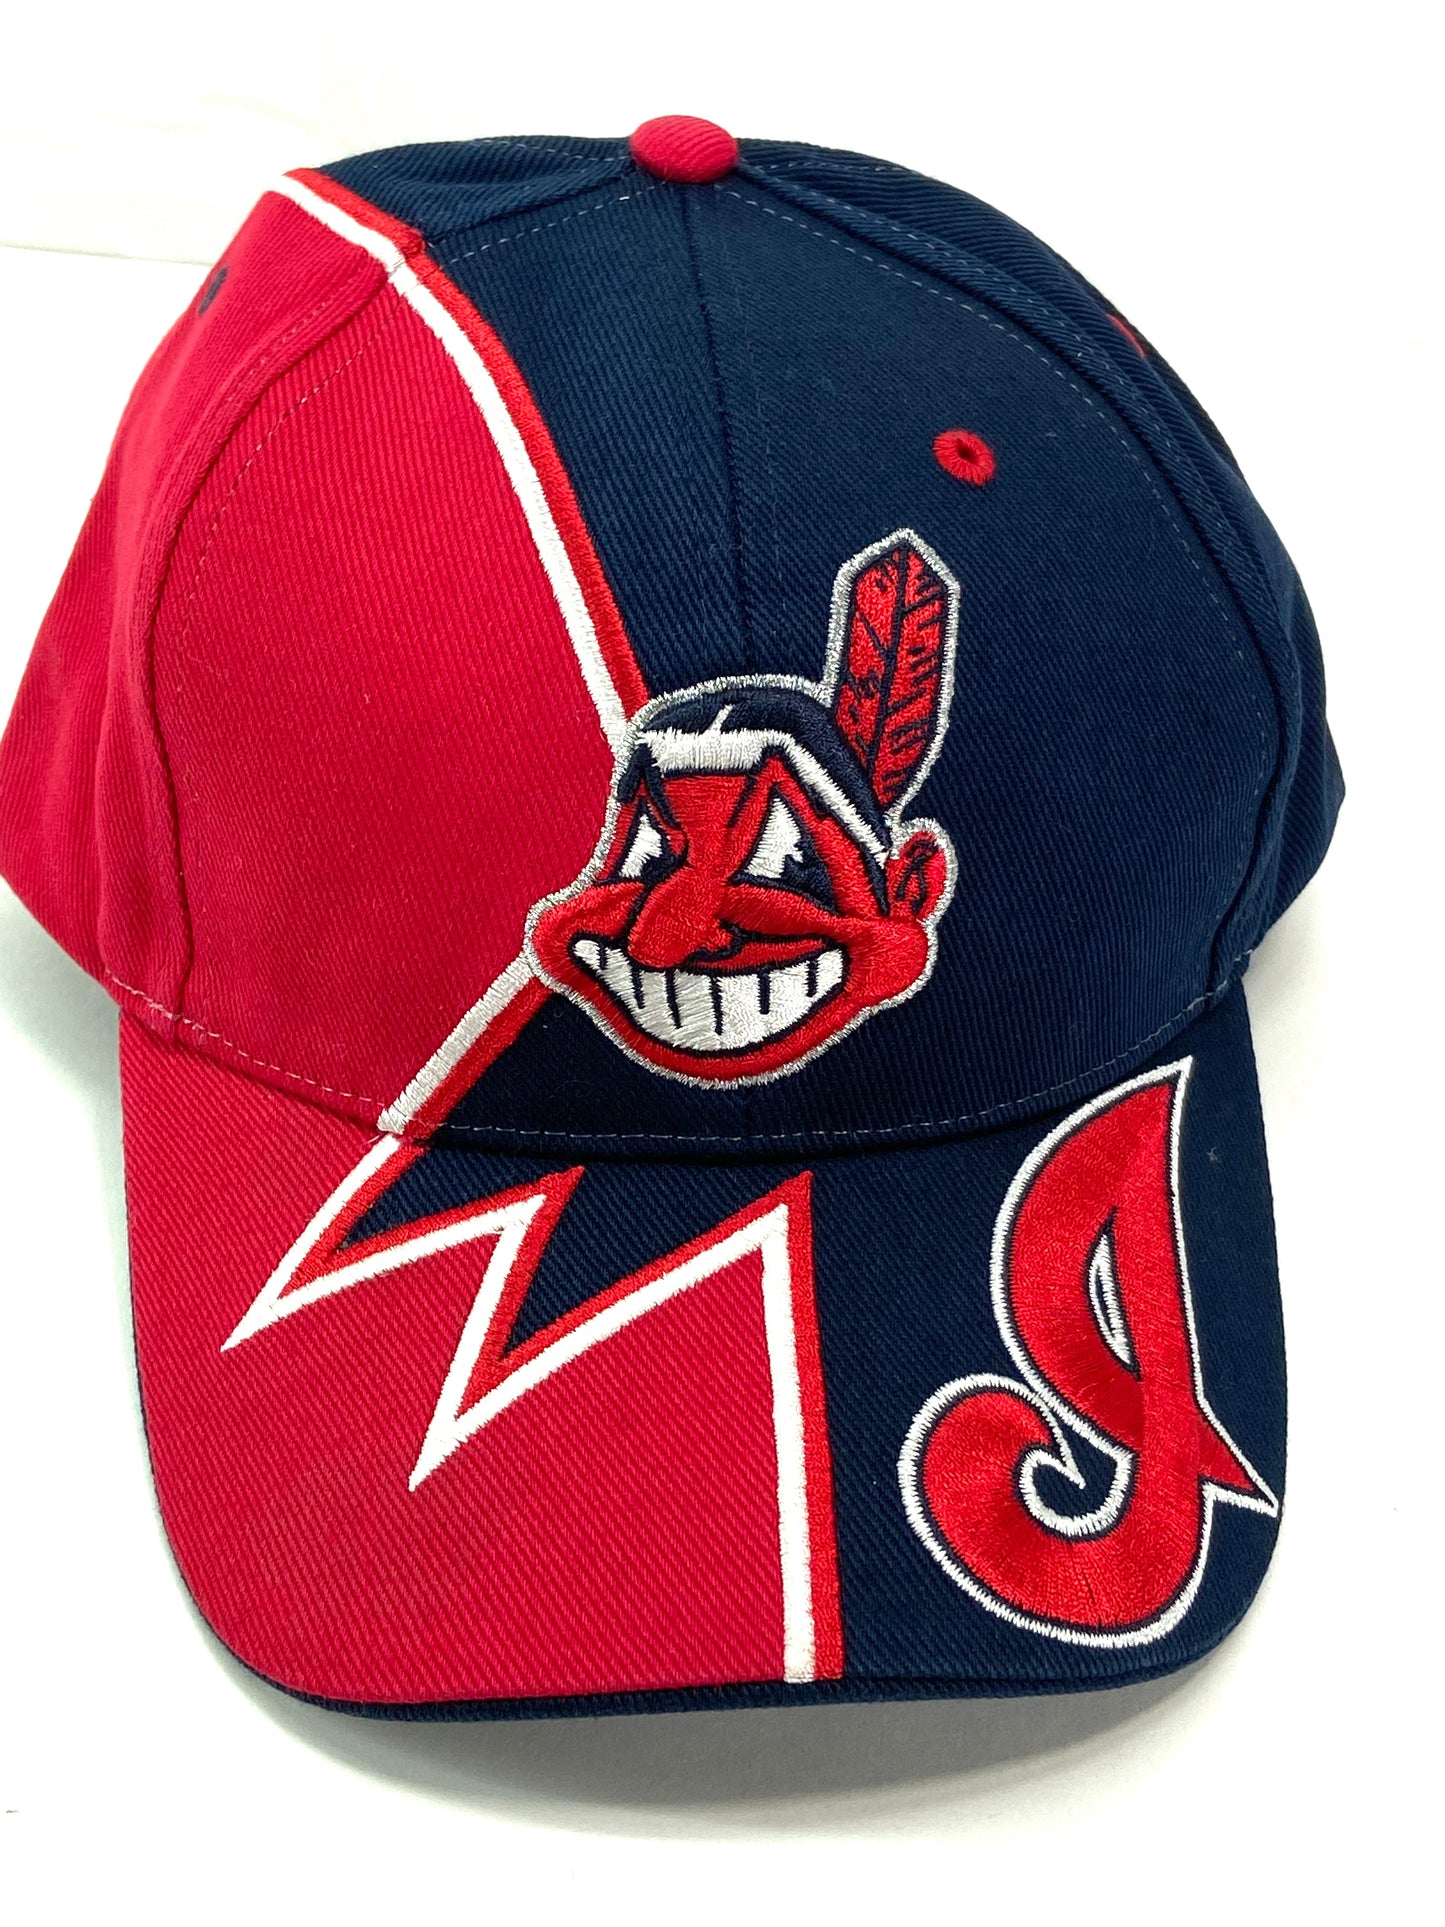 Cleveland Indians Vintage MLB "Splash" Hat by Twins Enterprise